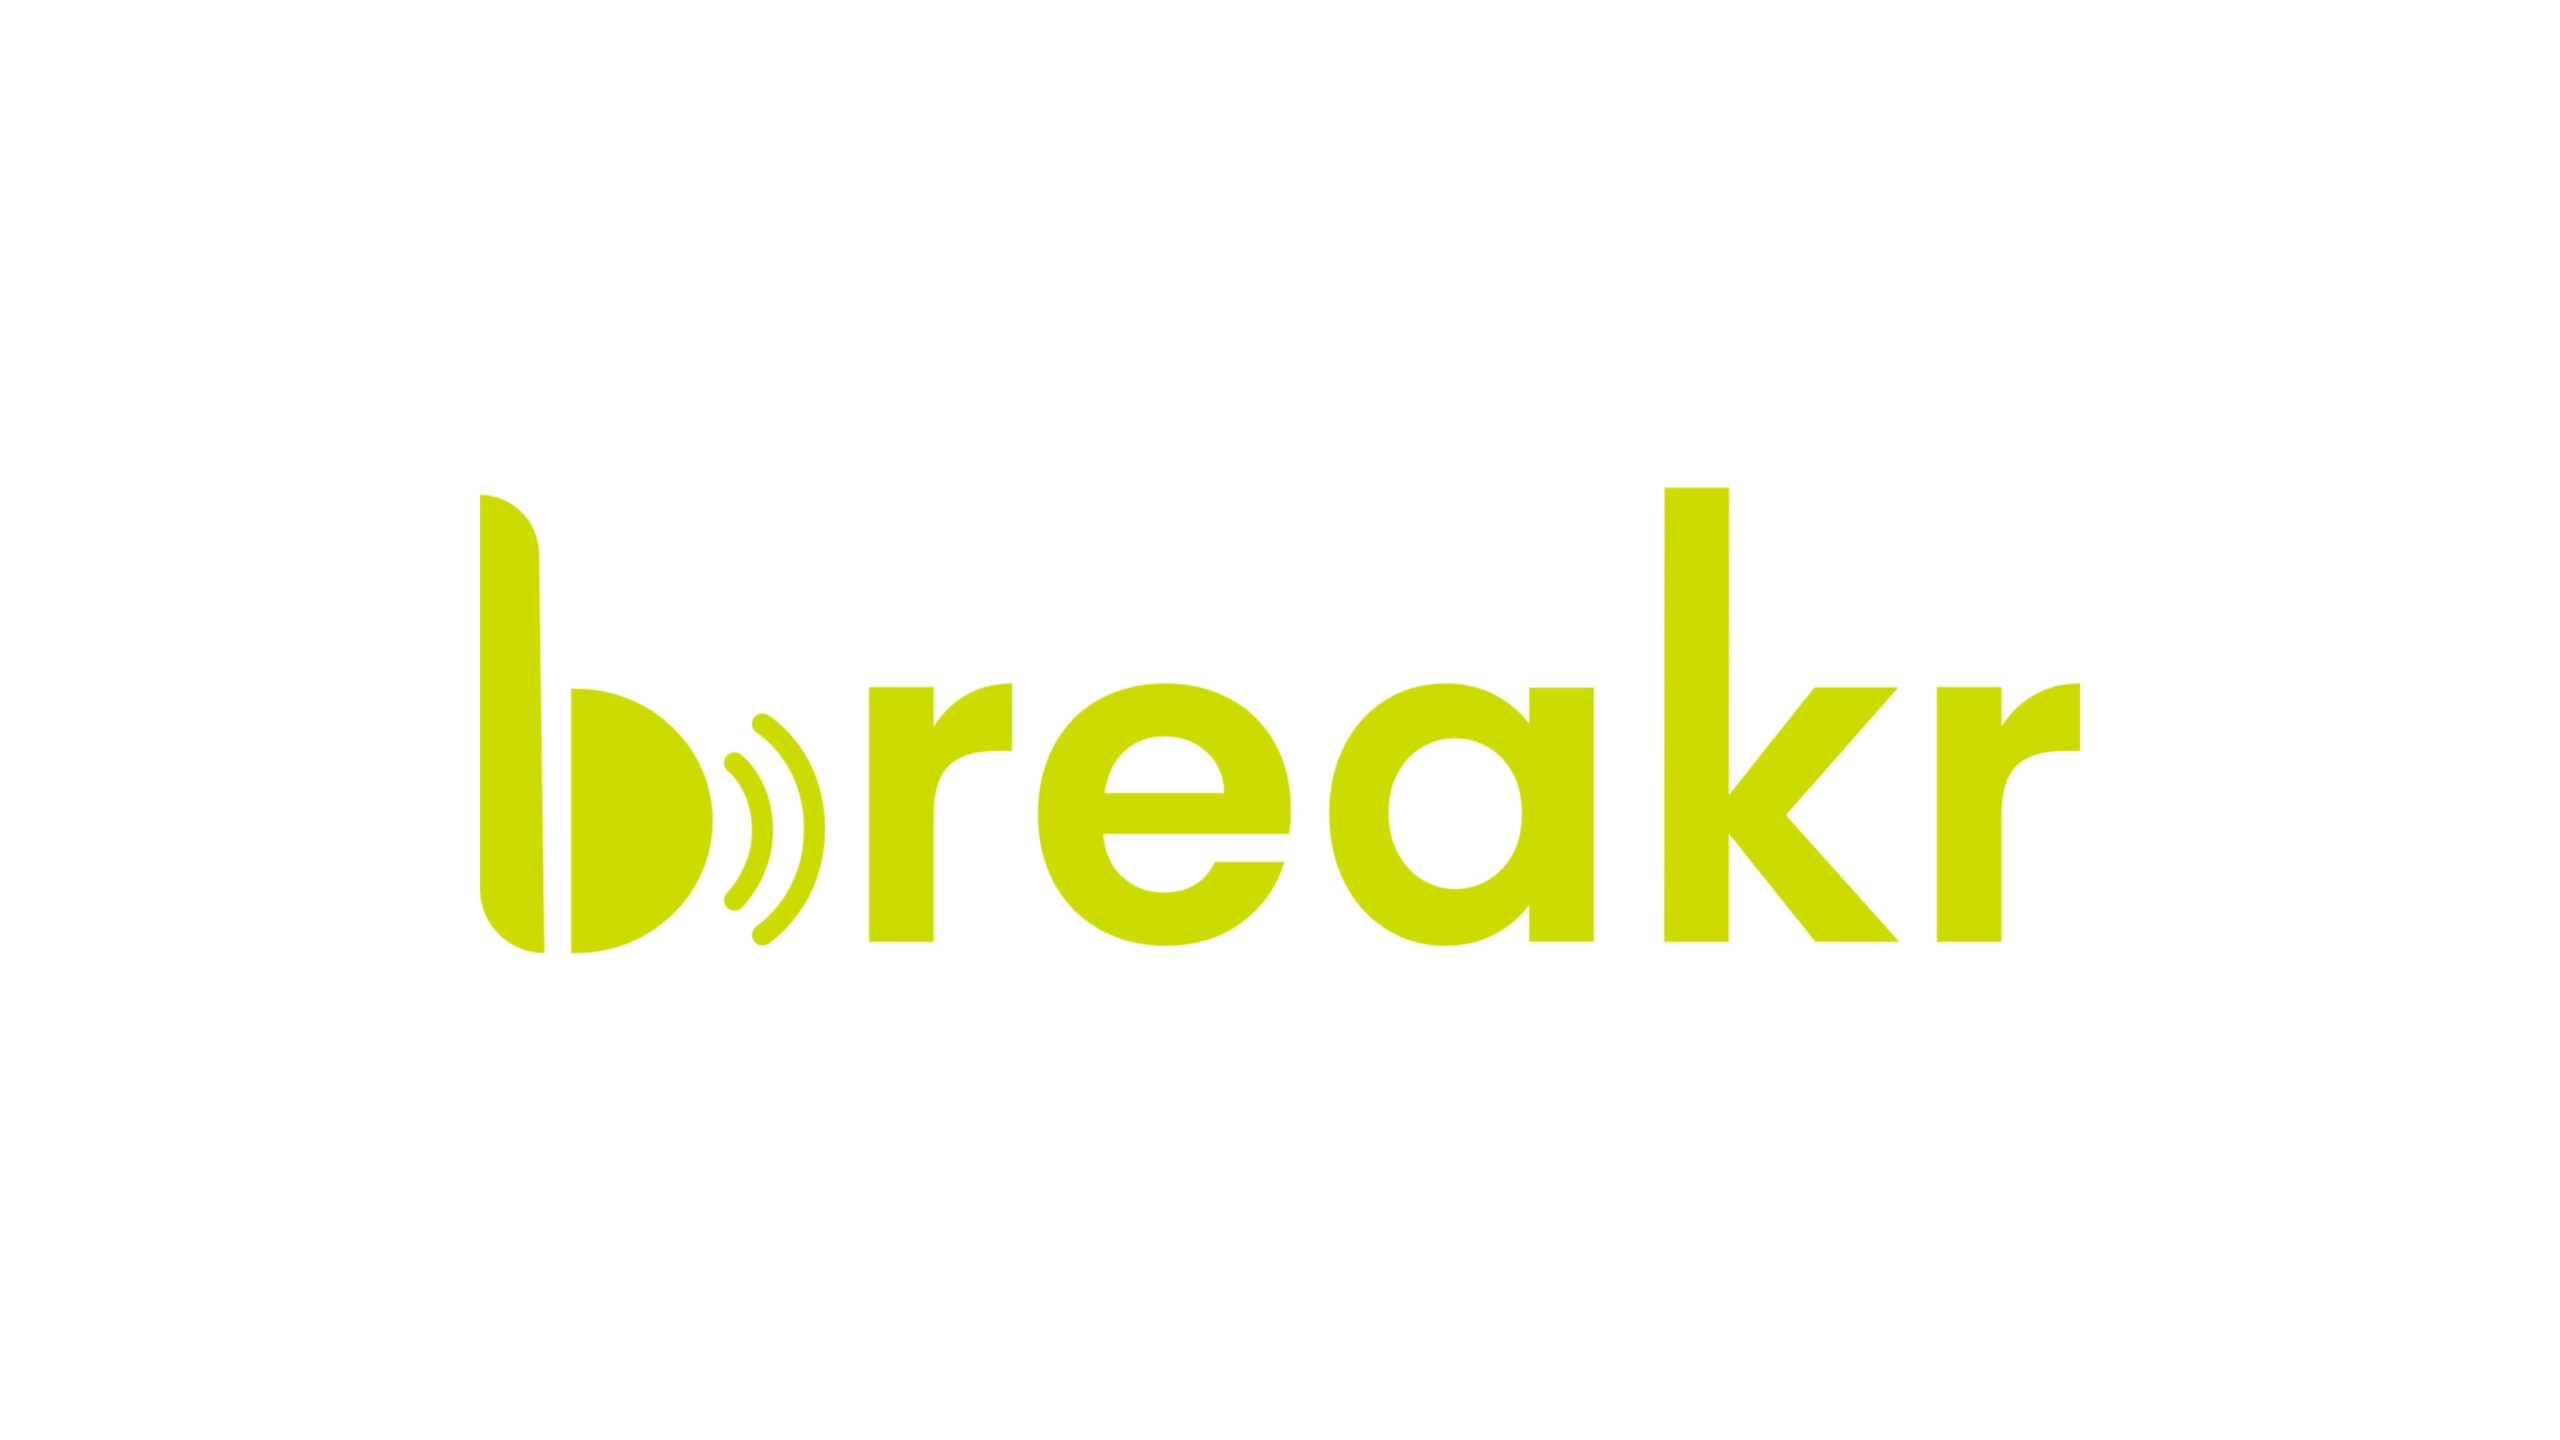 クリエイター、ブランド、アーティストをソーシャルメディアインフルエンサーと結びつけるプラットフォームを開発するBreakrが190万ドルの資金調達